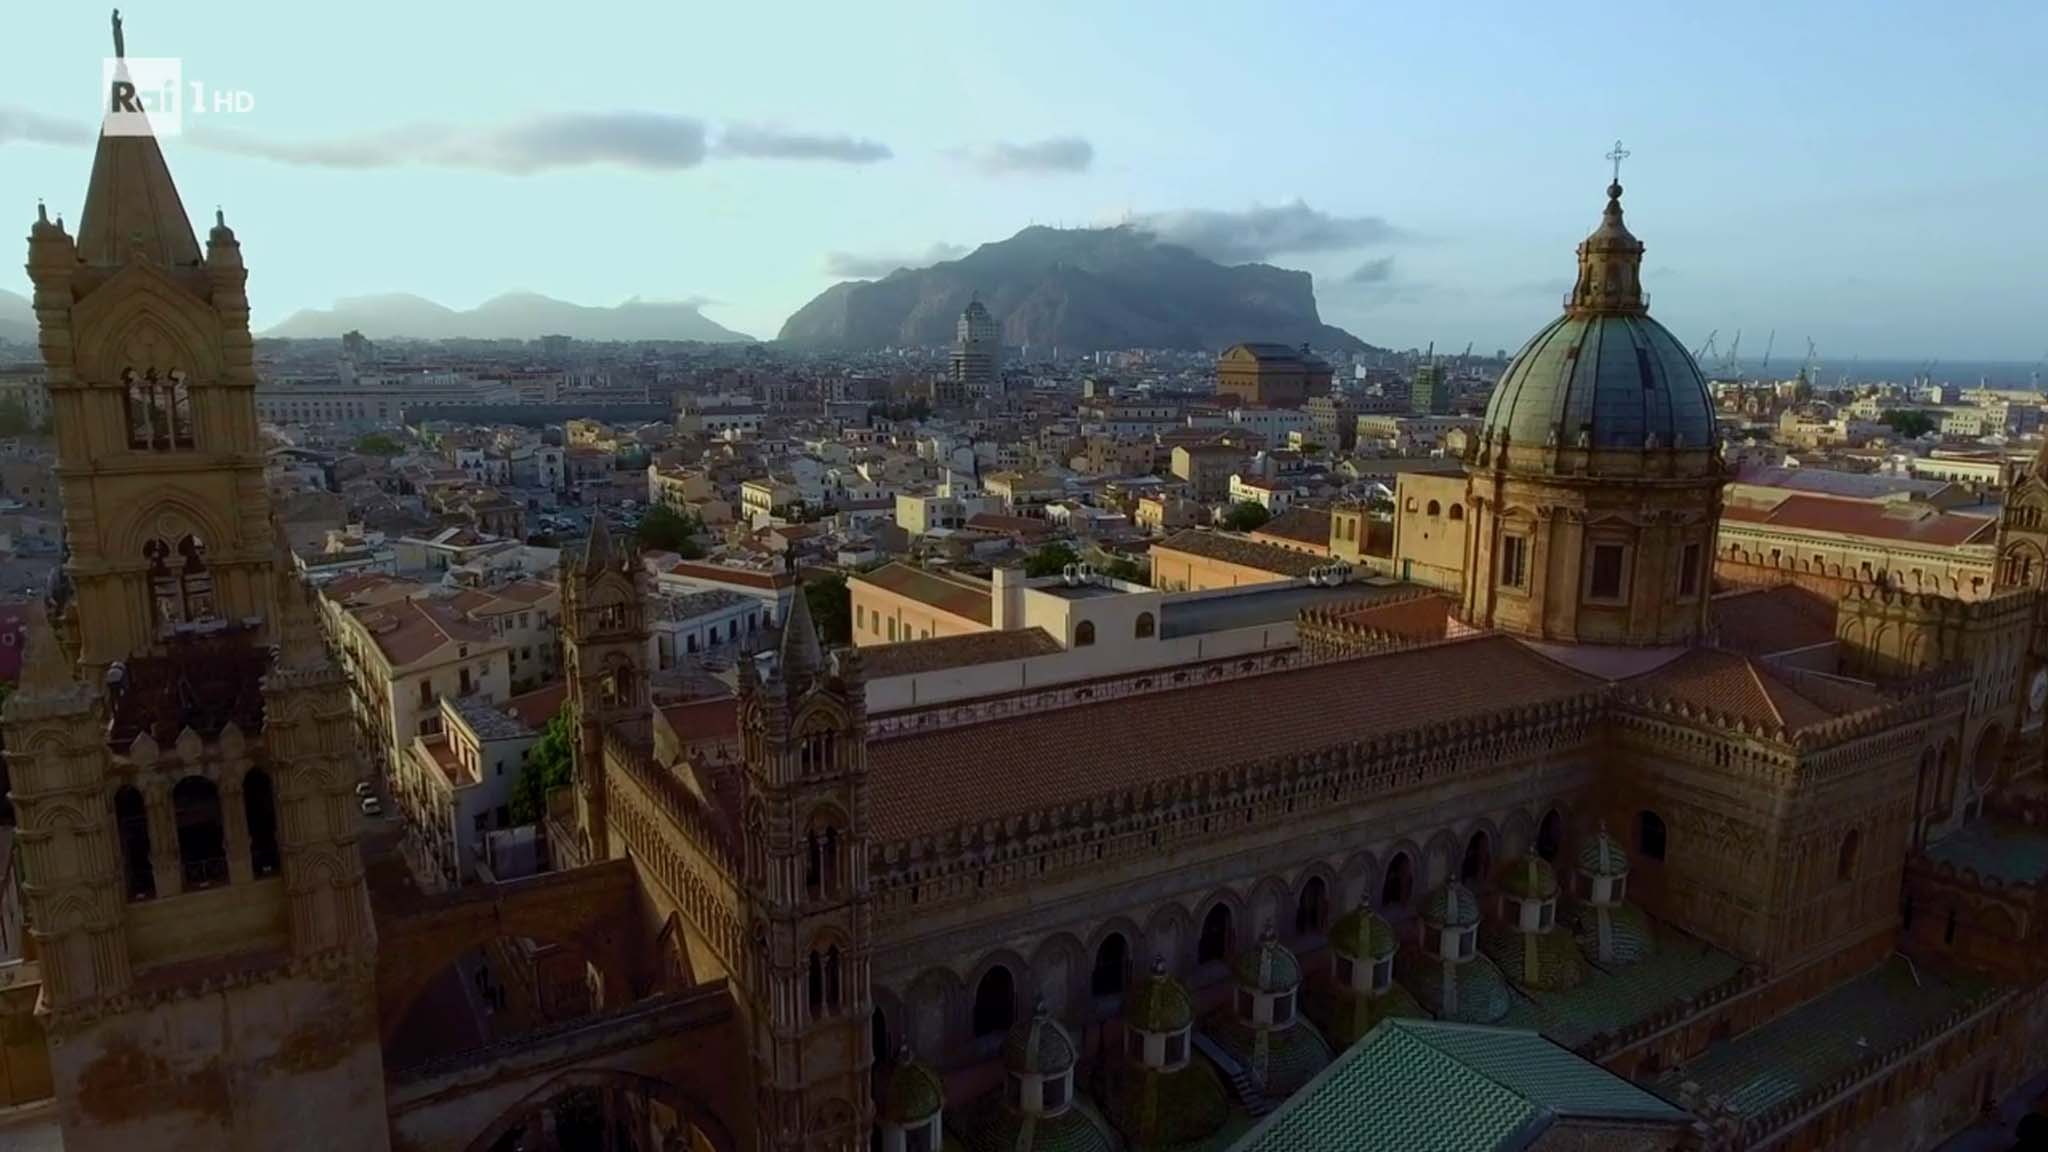 Scopri di più sull'articolo Palermo tra le 25 città più belle del mondo